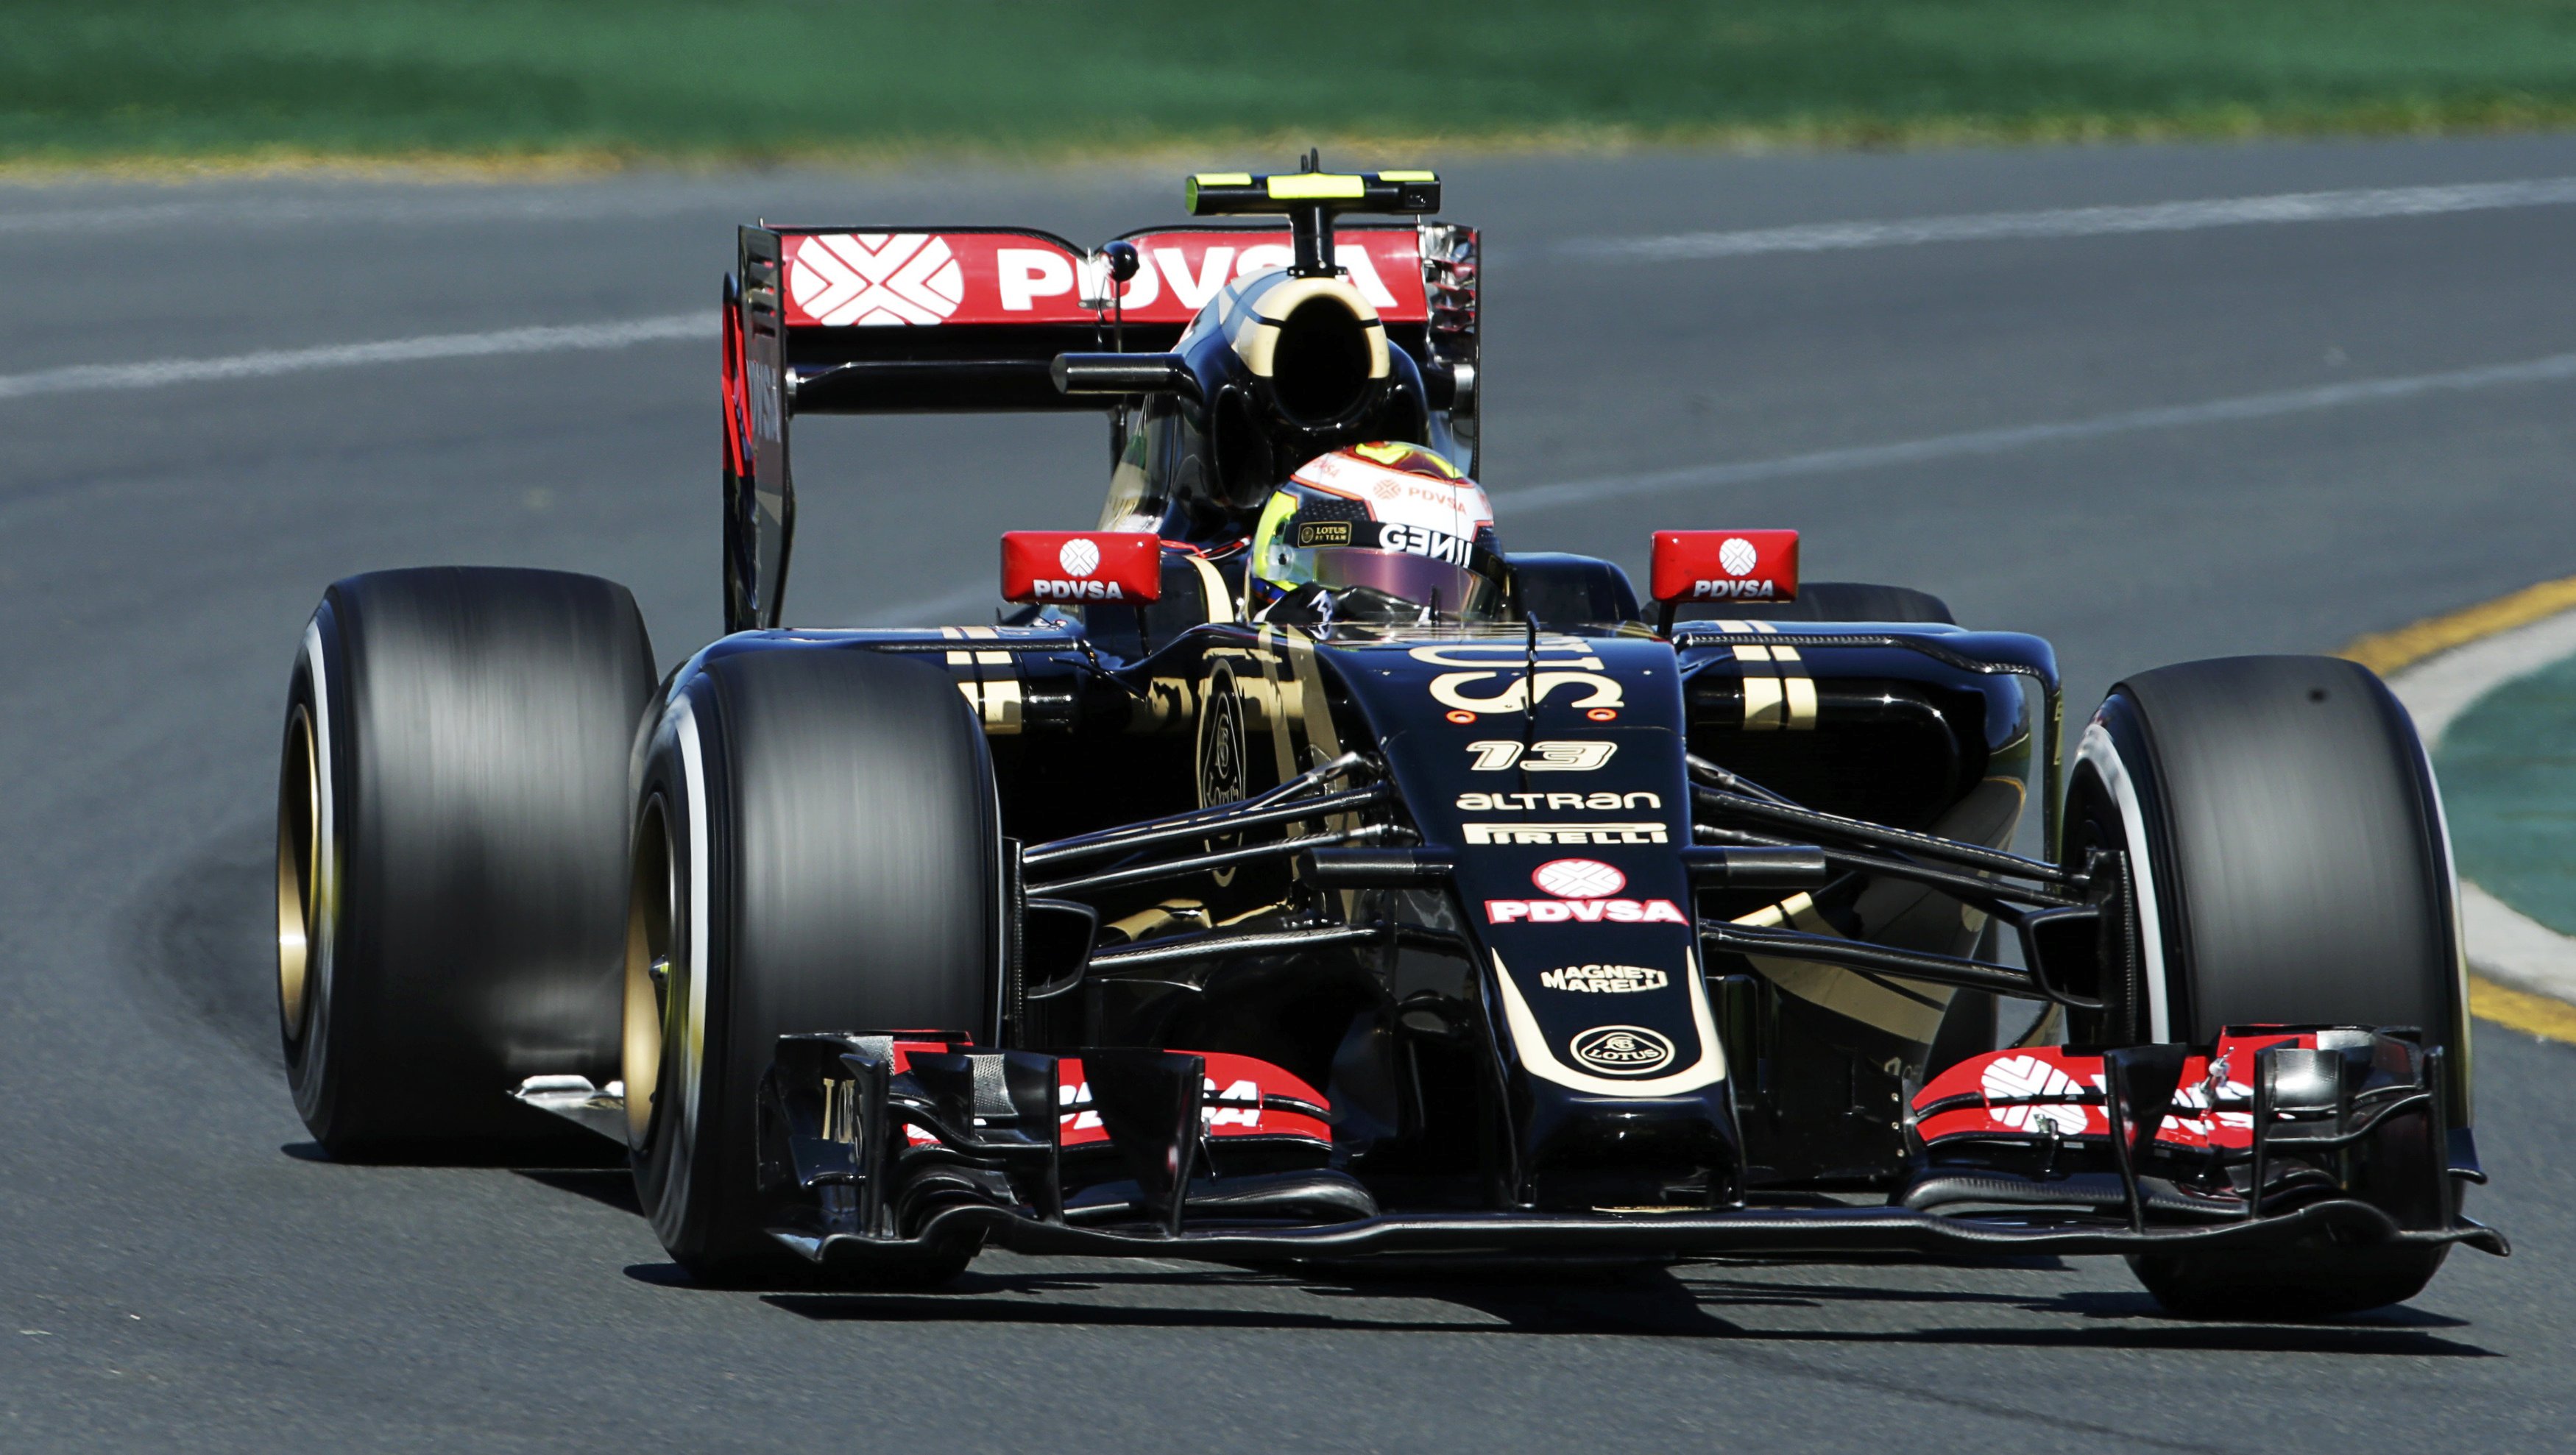 Pastor Maldonado, decepcionado por no entrar en la Q3 del GP de China